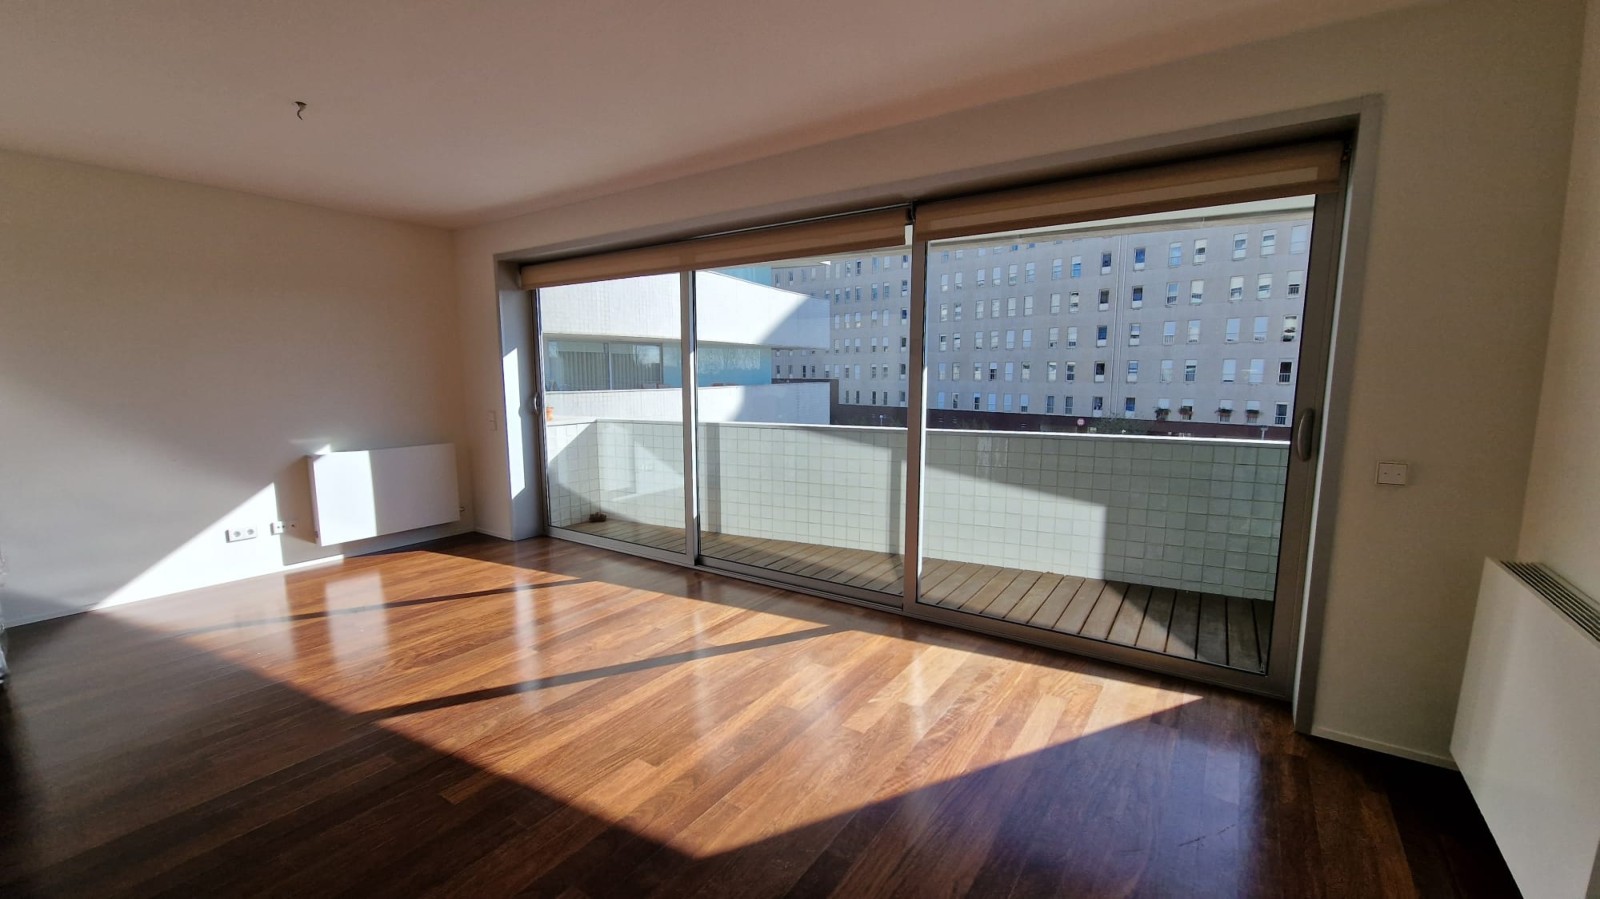 Apartamento duplex com varanda, para venda, em Lordelo do Ouro_219123